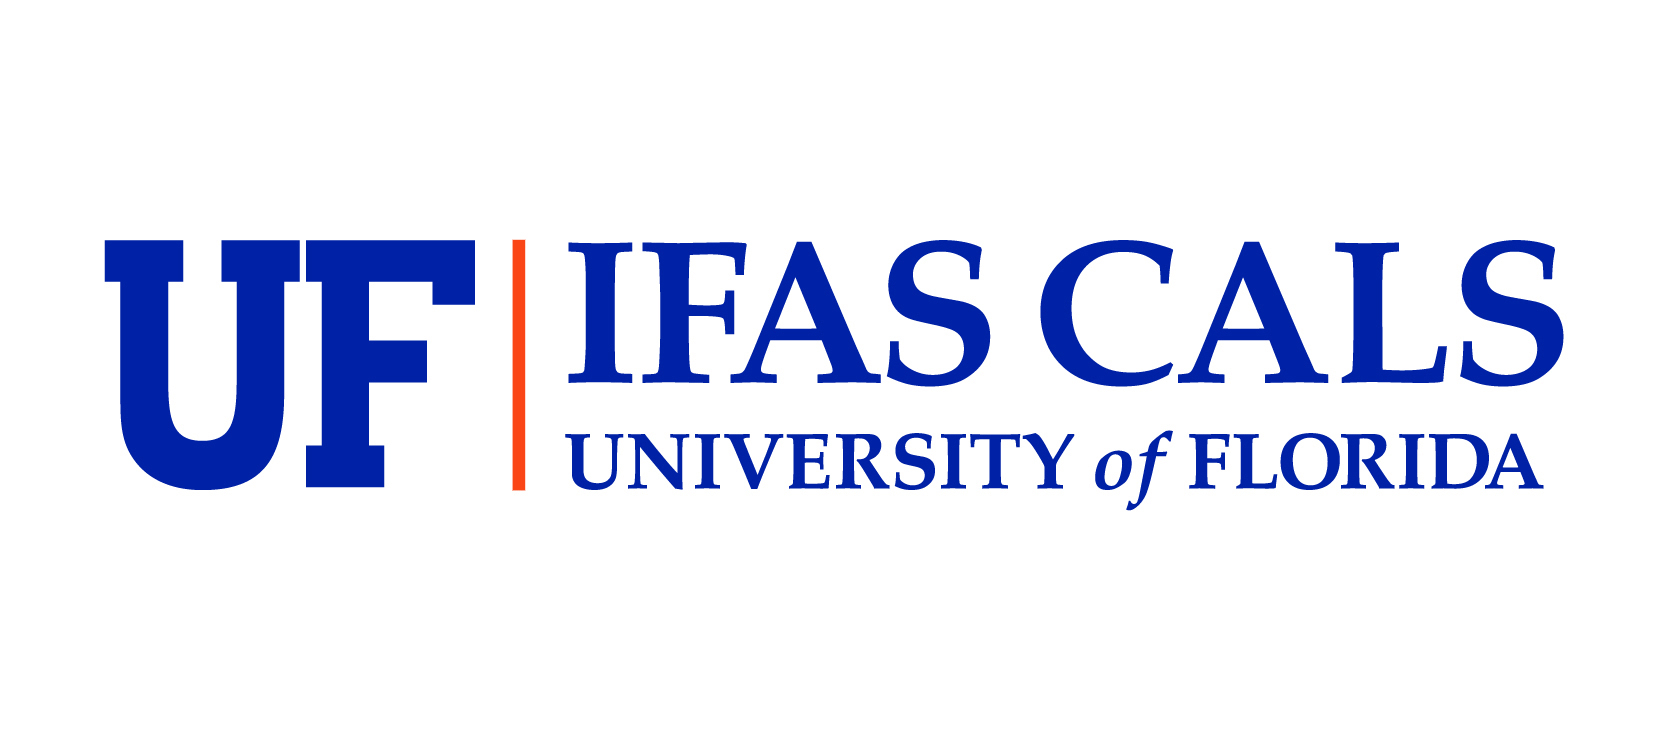 UF IFAS CALS logo 